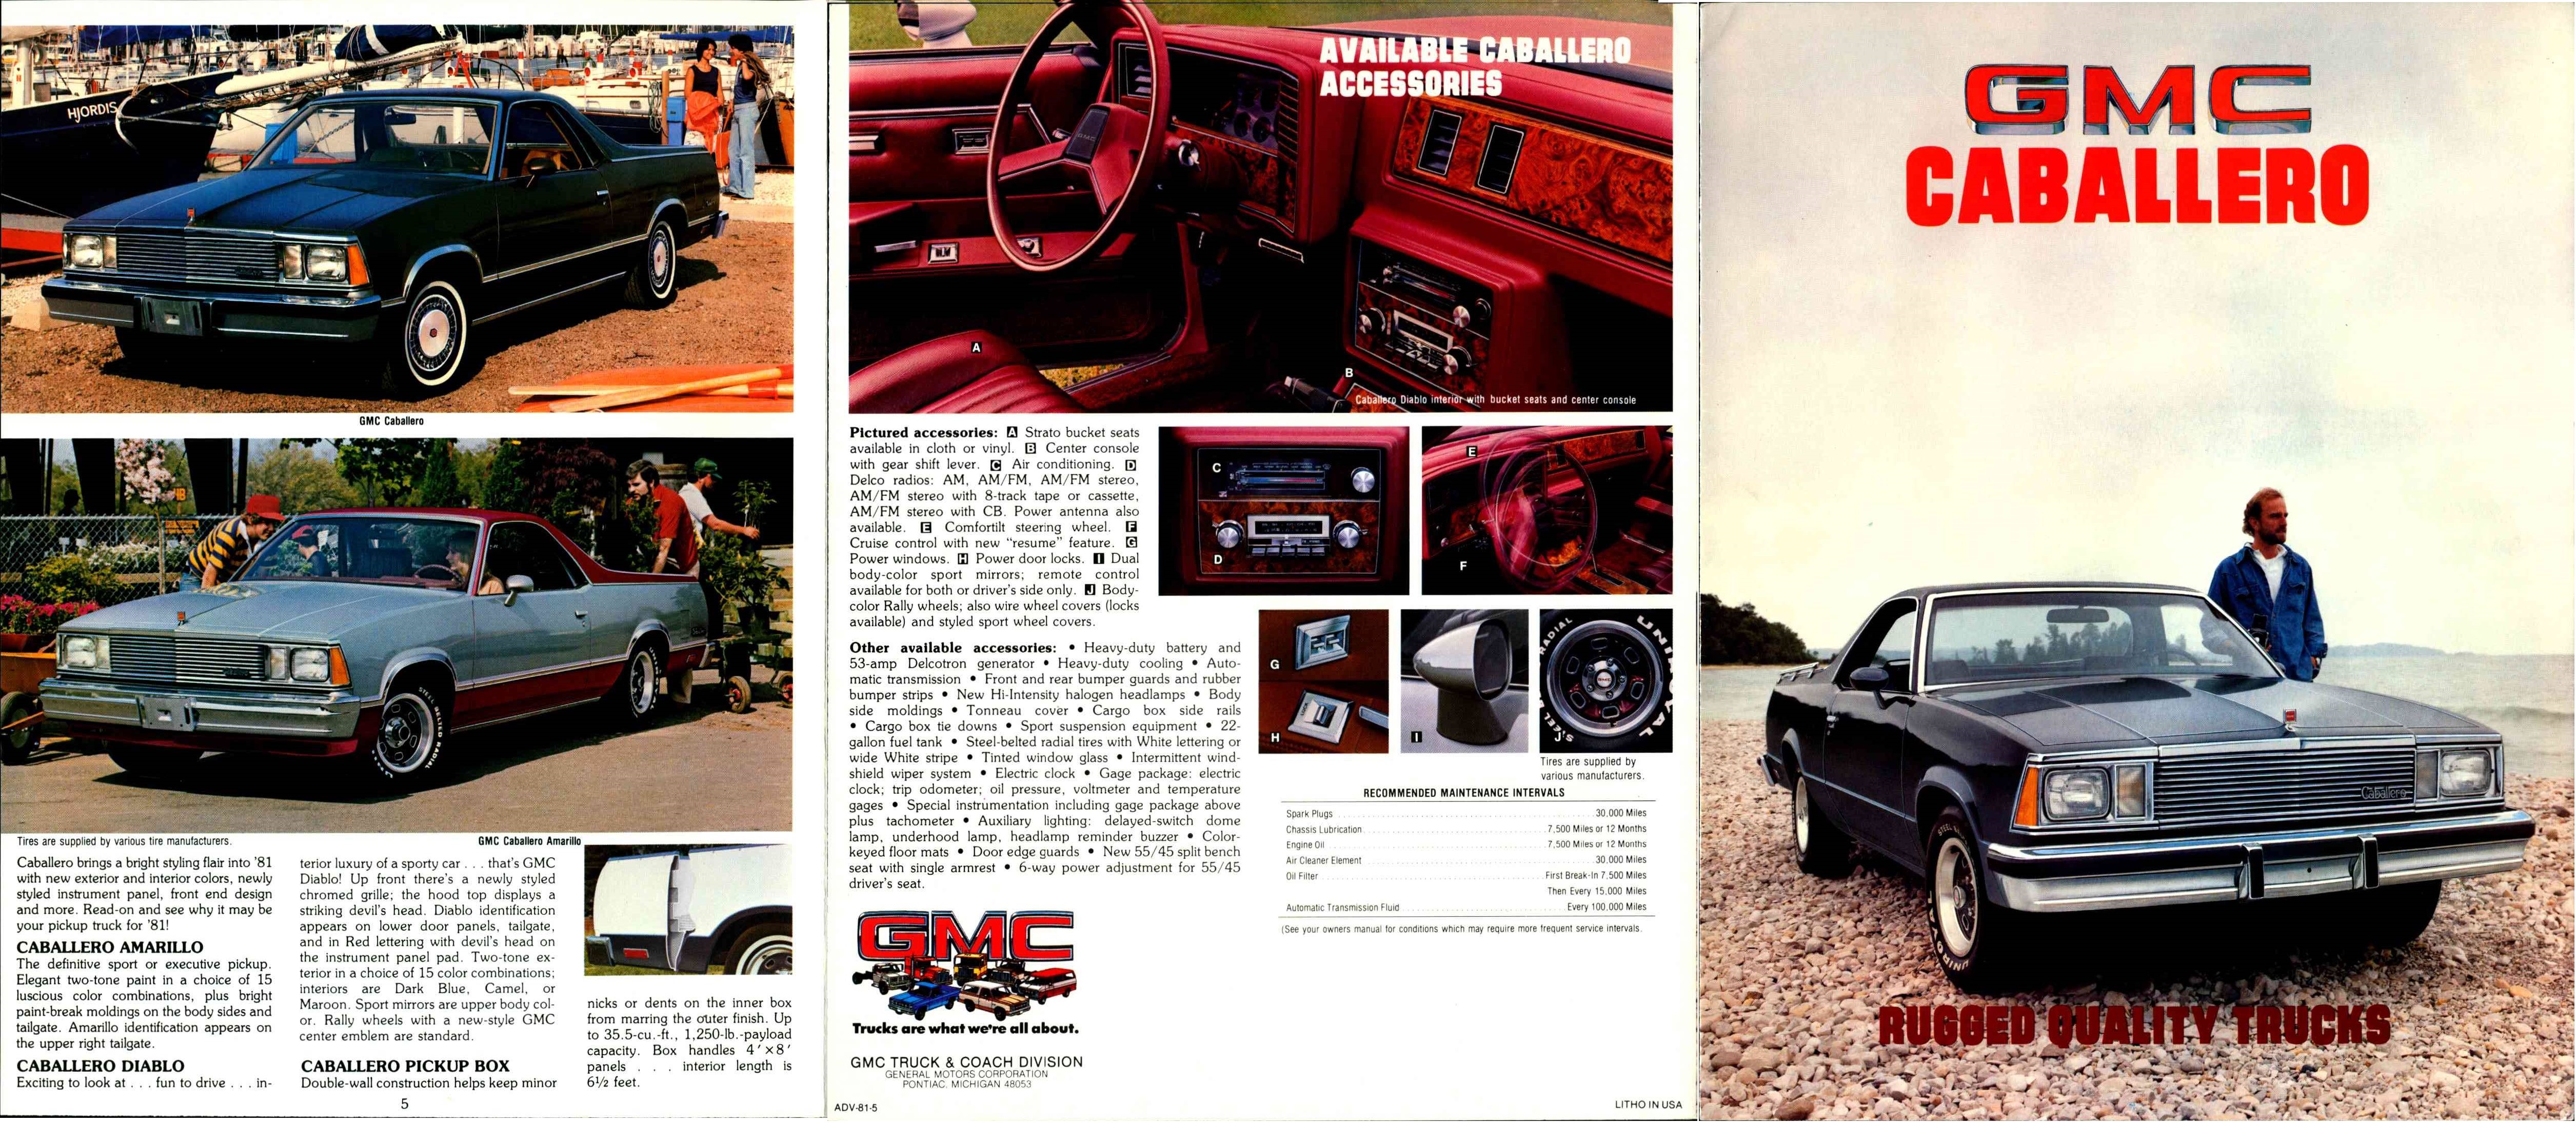 1981 GMC Caballero Brochure 05-06-01